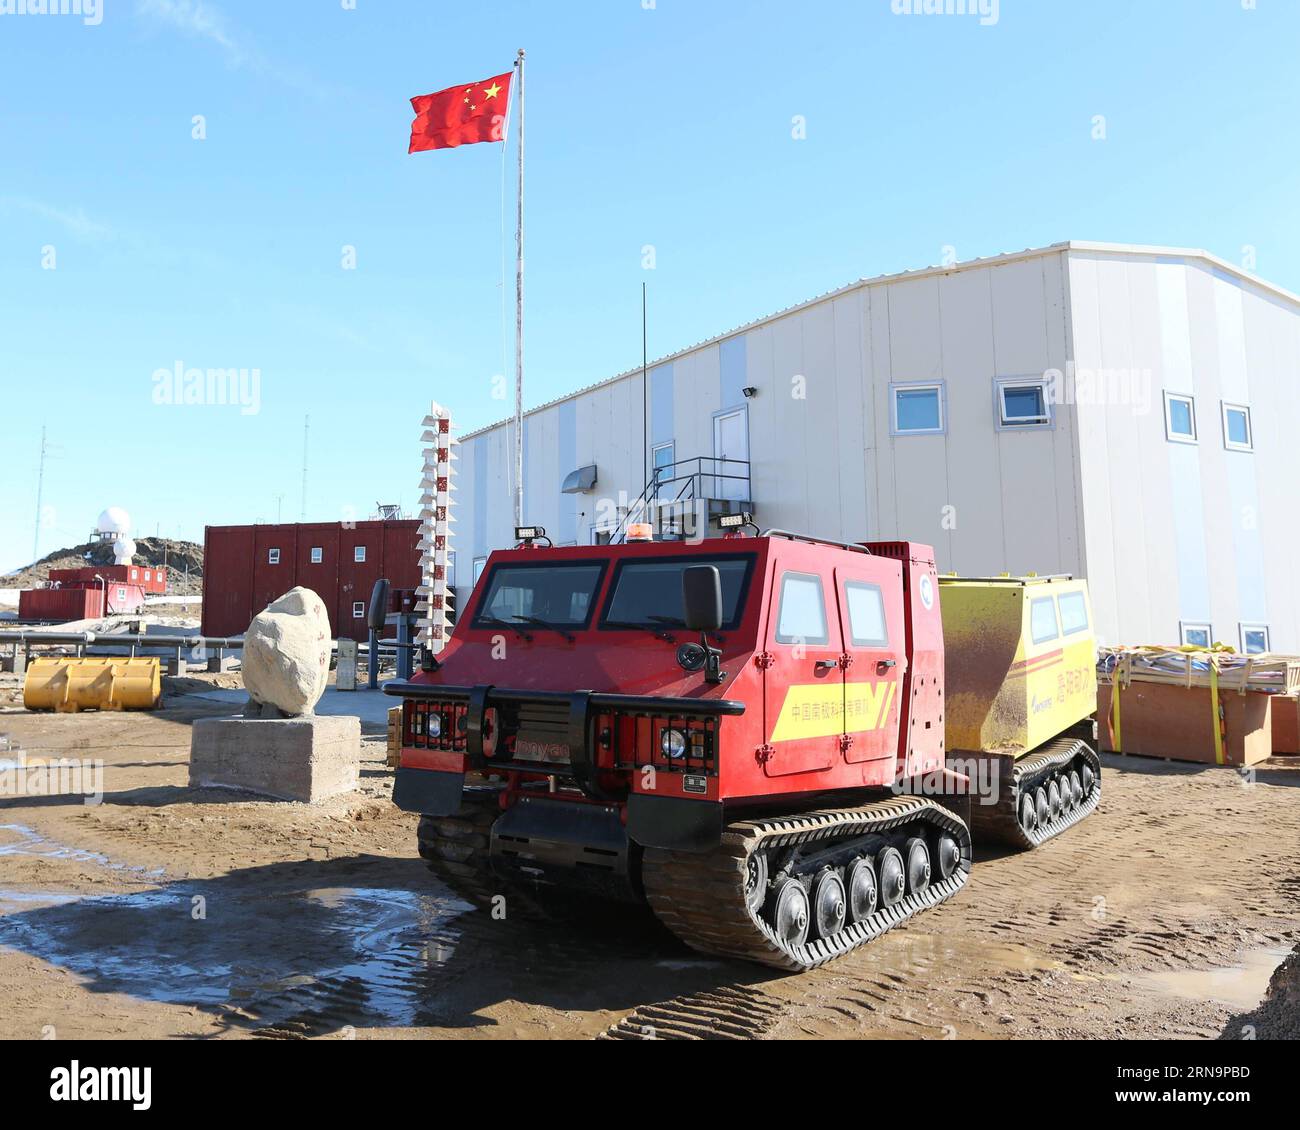 La foto scattata il 14 dicembre 2015 mostra il primo veicolo fuoristrada della Cina presso la stazione antartica di Zhongshan, una base di ricerca scientifica cinese in Antartide. Il primo veicolo fuoristrada della Cina è stato recentemente sottoposto a un test sul campo vicino alla stazione antartica di Zhongshan. Il veicolo anfibio ha un'eccellente manovrabilità e può correre in campi di neve, deserti, spiagge e regioni montuose a una velocità massima di 60 chilometri all'ora e 5 chilometri all'ora in acqua. ) (wyo) ANTARTIDE-CHINA-ZHONGSHAN STATION-32ND EXPEDITION-FIRST ATV ZhuxJichai PUBLICATIONxNOTxINxCHN foto scattata IL 14 dicembre 2015 mostra C. Foto Stock